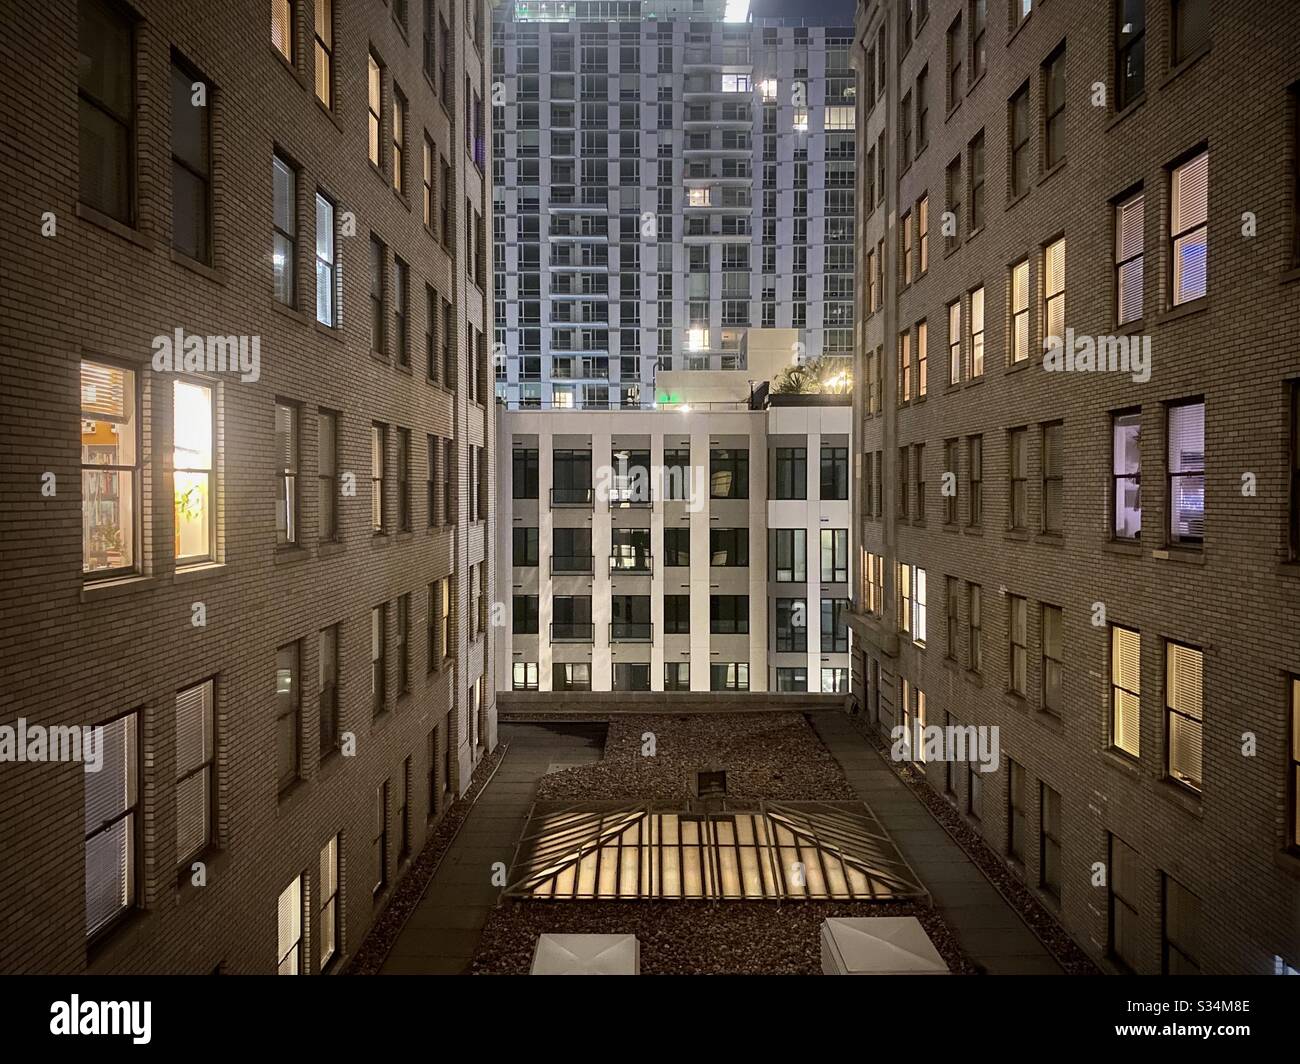 LOS ANGELES, CA, MAR 2020: Wohnungsfenster nachts in Gebäuden in der Innenstadt, Blick von der Architektur der 1920er Jahre auf den Neubau Stockfoto